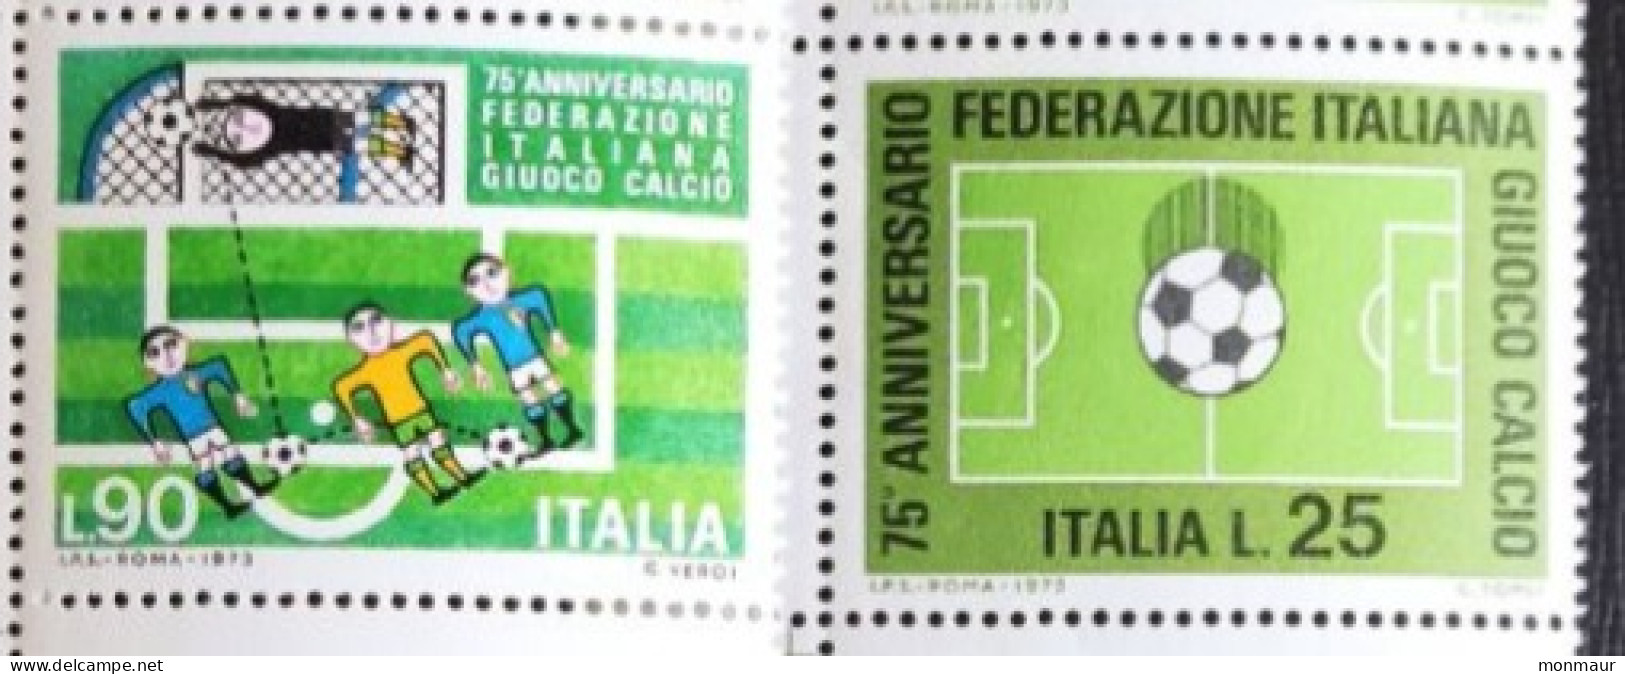 ITALIA 1973  ANNIVERSARIO FEDERAZIONE ITALIANA GIUOCO CALCIO - 1971-80: Mint/hinged